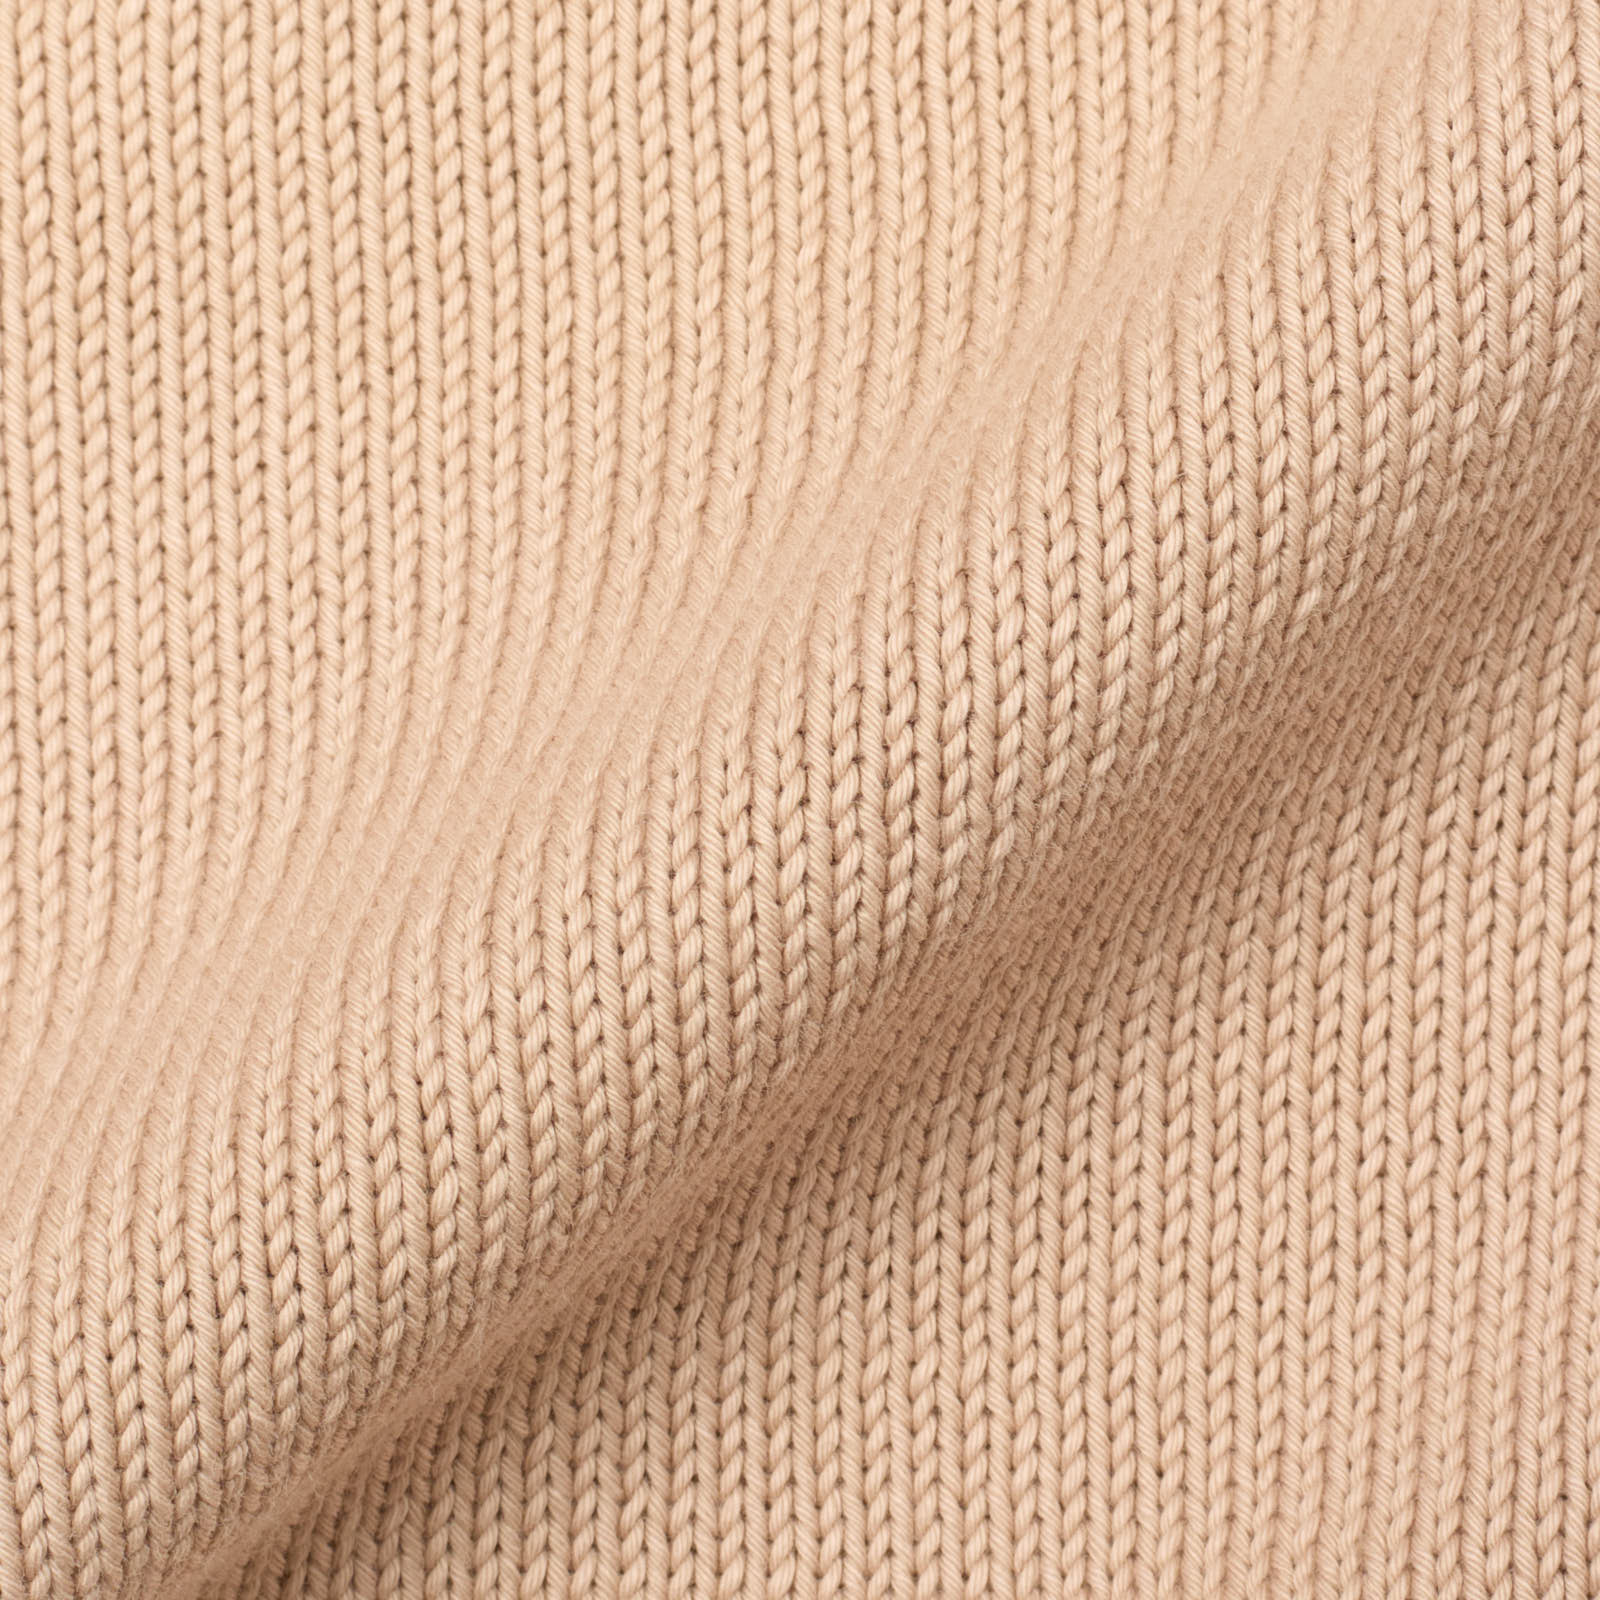 DELLA CIANA for VANNUCCI Light Beige Cotton Knit Cardigan Sweater NEW